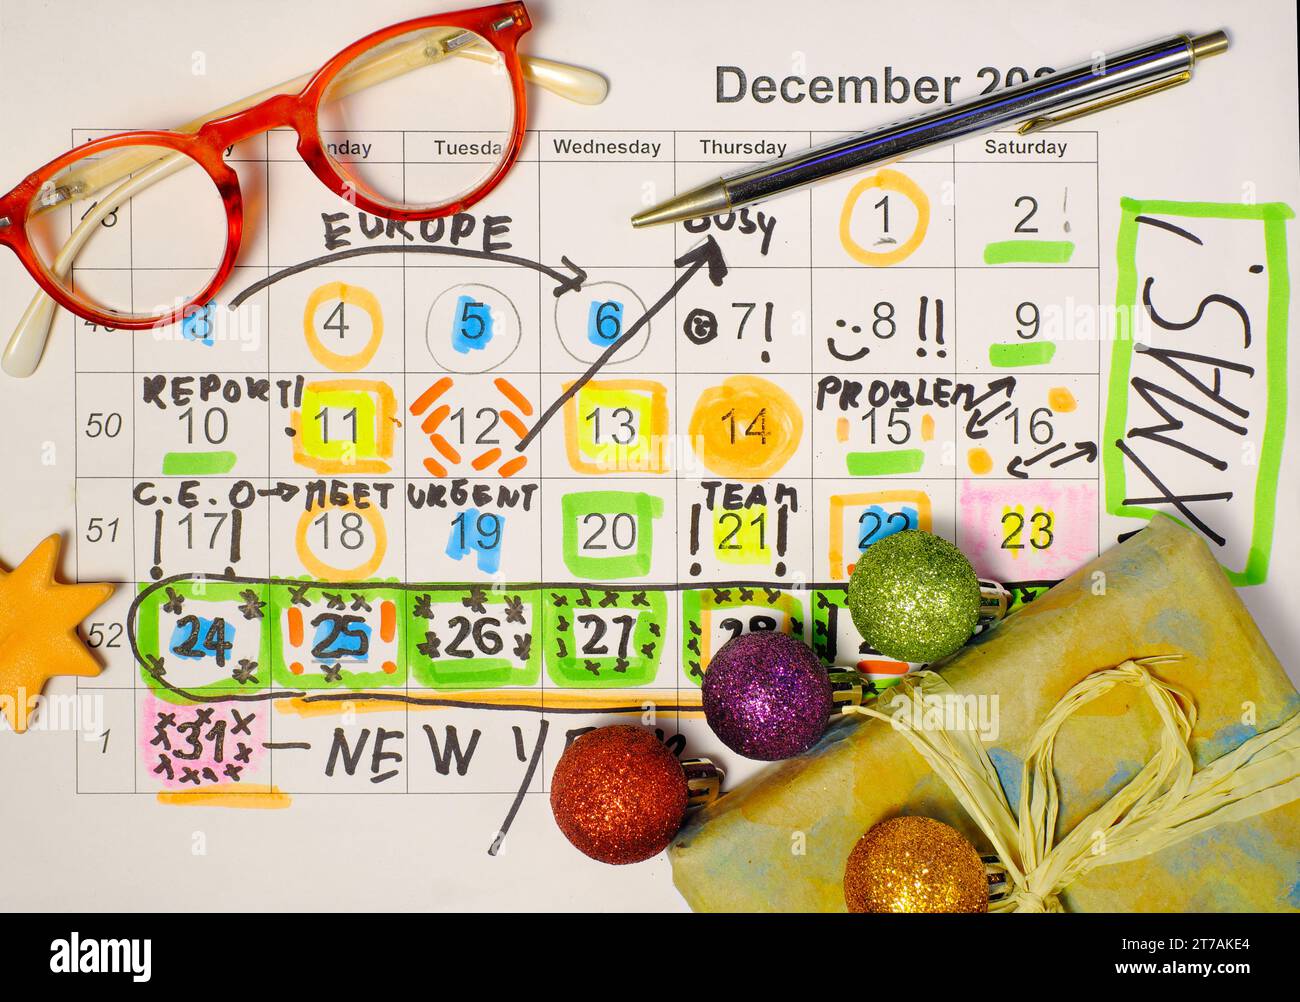 Calendario con appuntamenti di lavoro, ingressi alle festività natalizie, balli di natale e regali di natale. Foto Stock